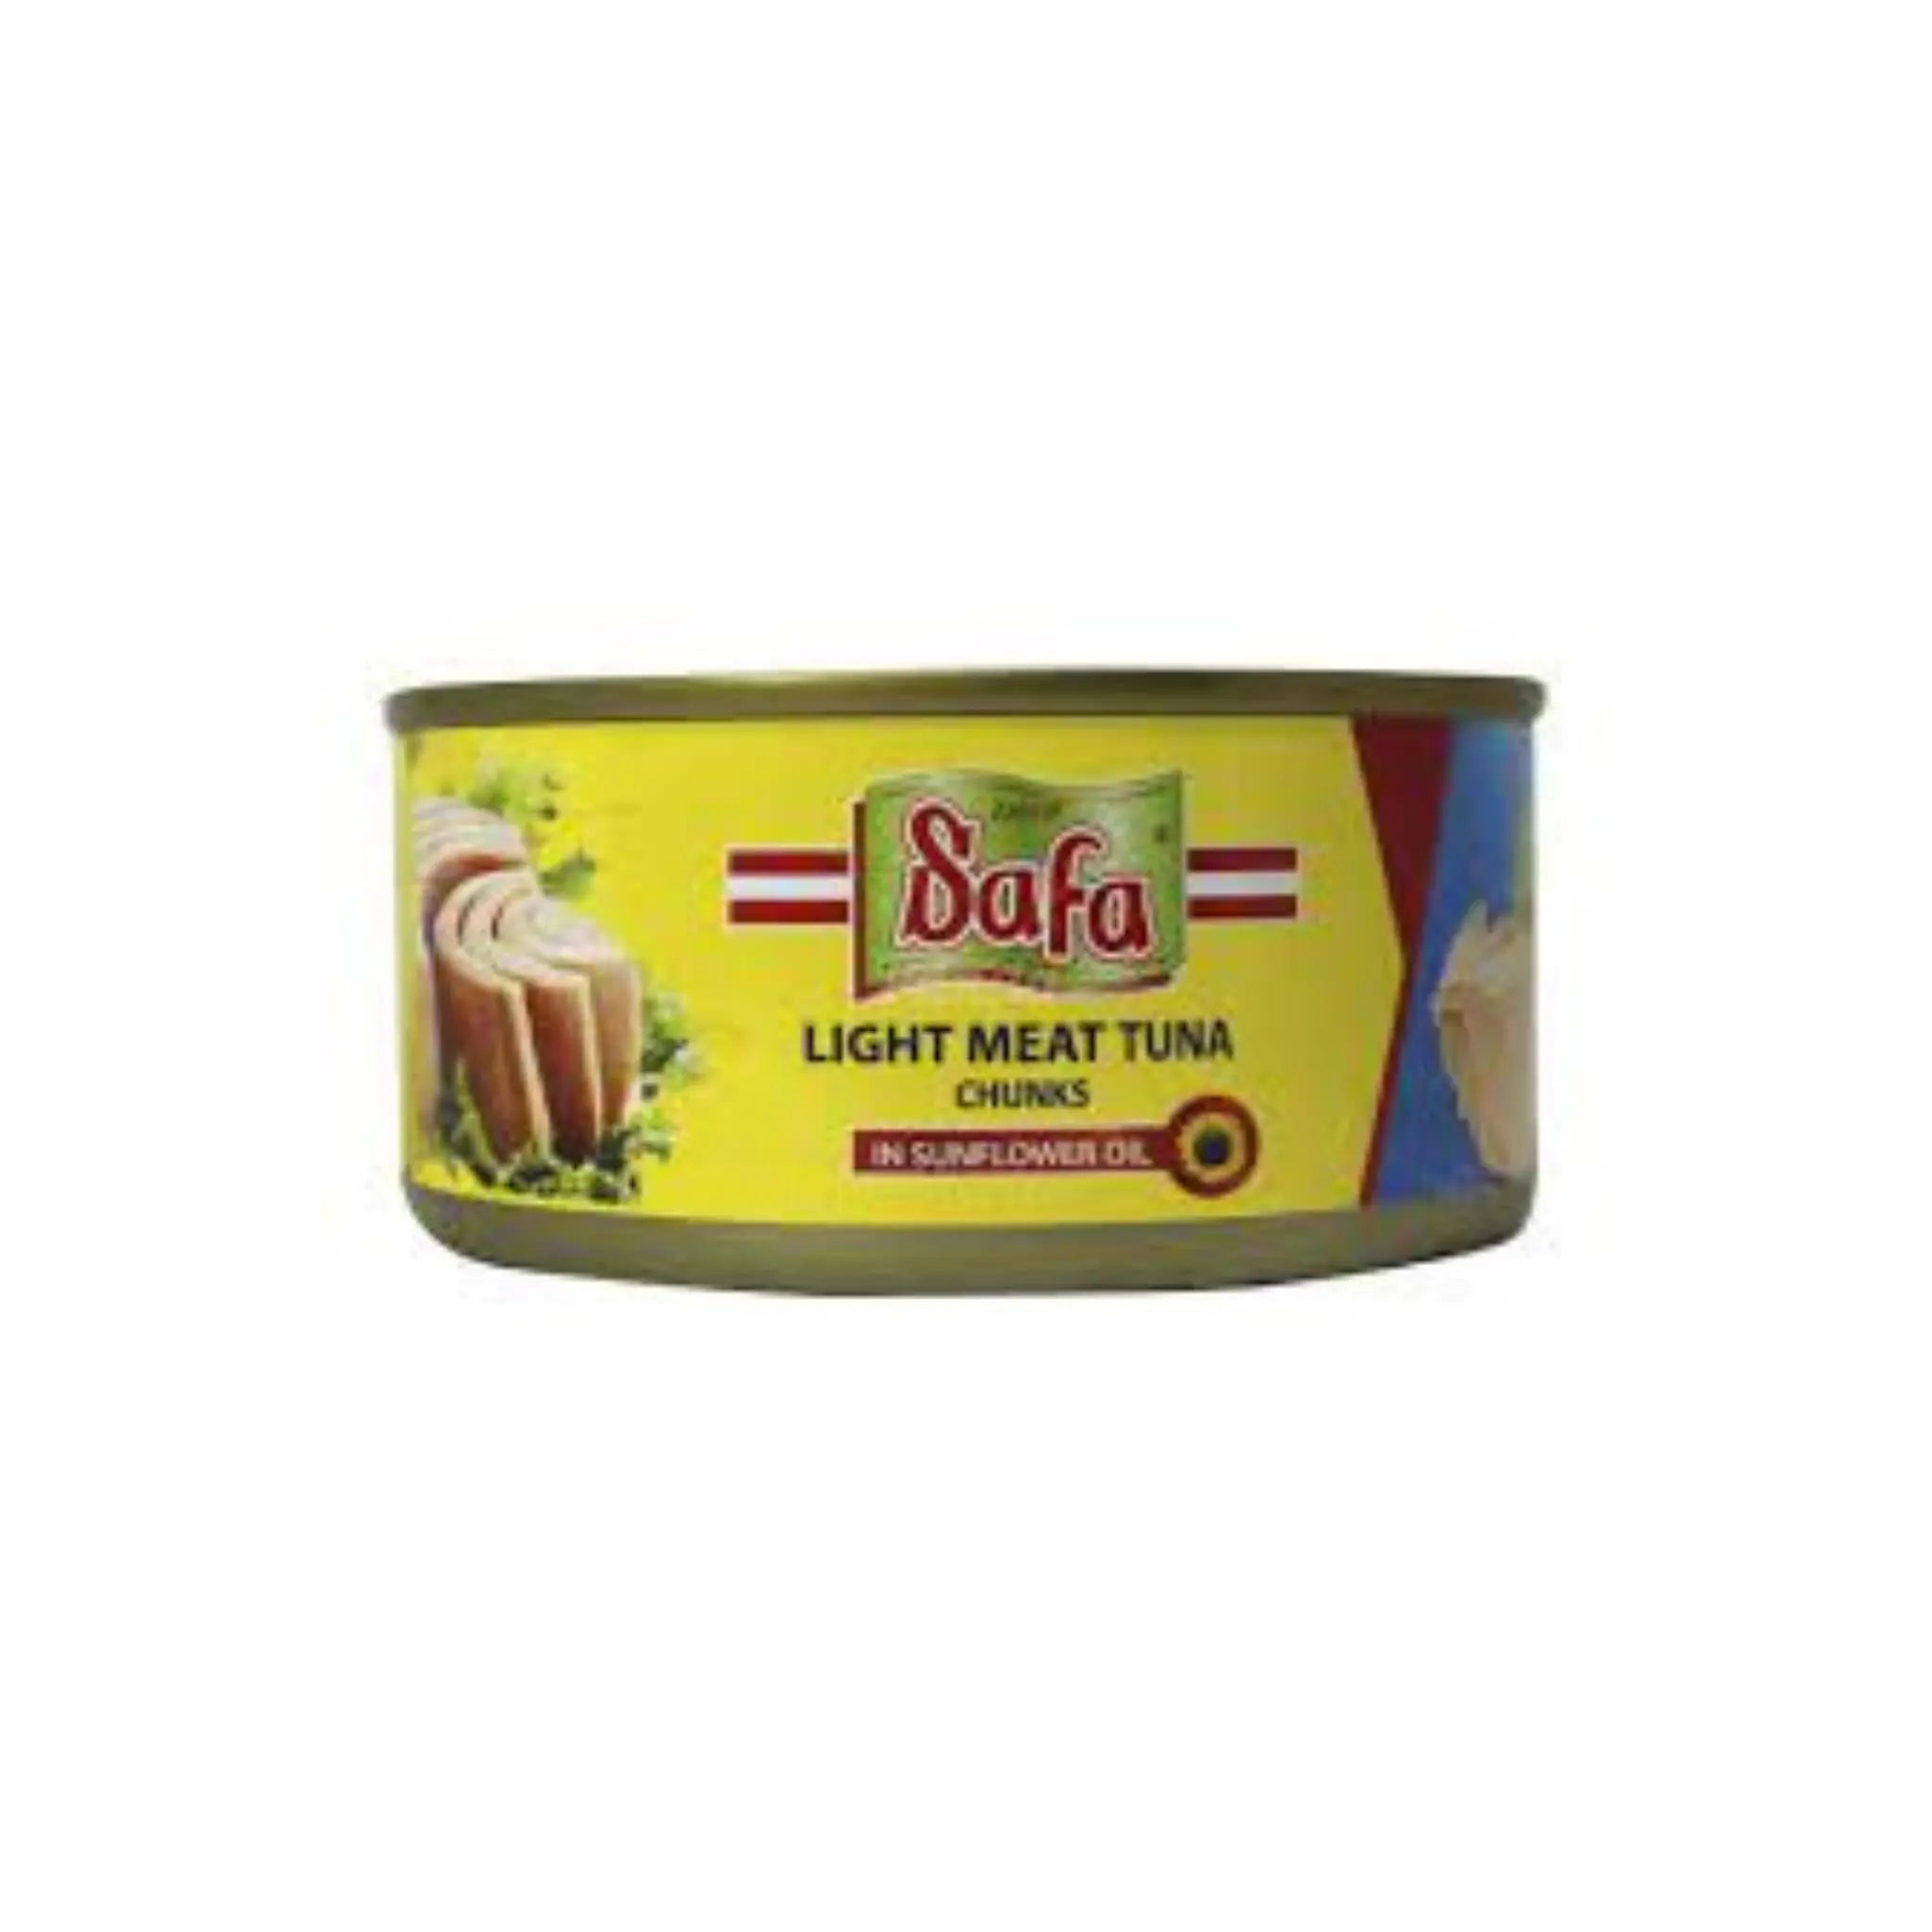 Zahrat Safa Light Meat Tuna Chunks in Sunflower Oil - 185gx48 (1 carton) Marino.AE